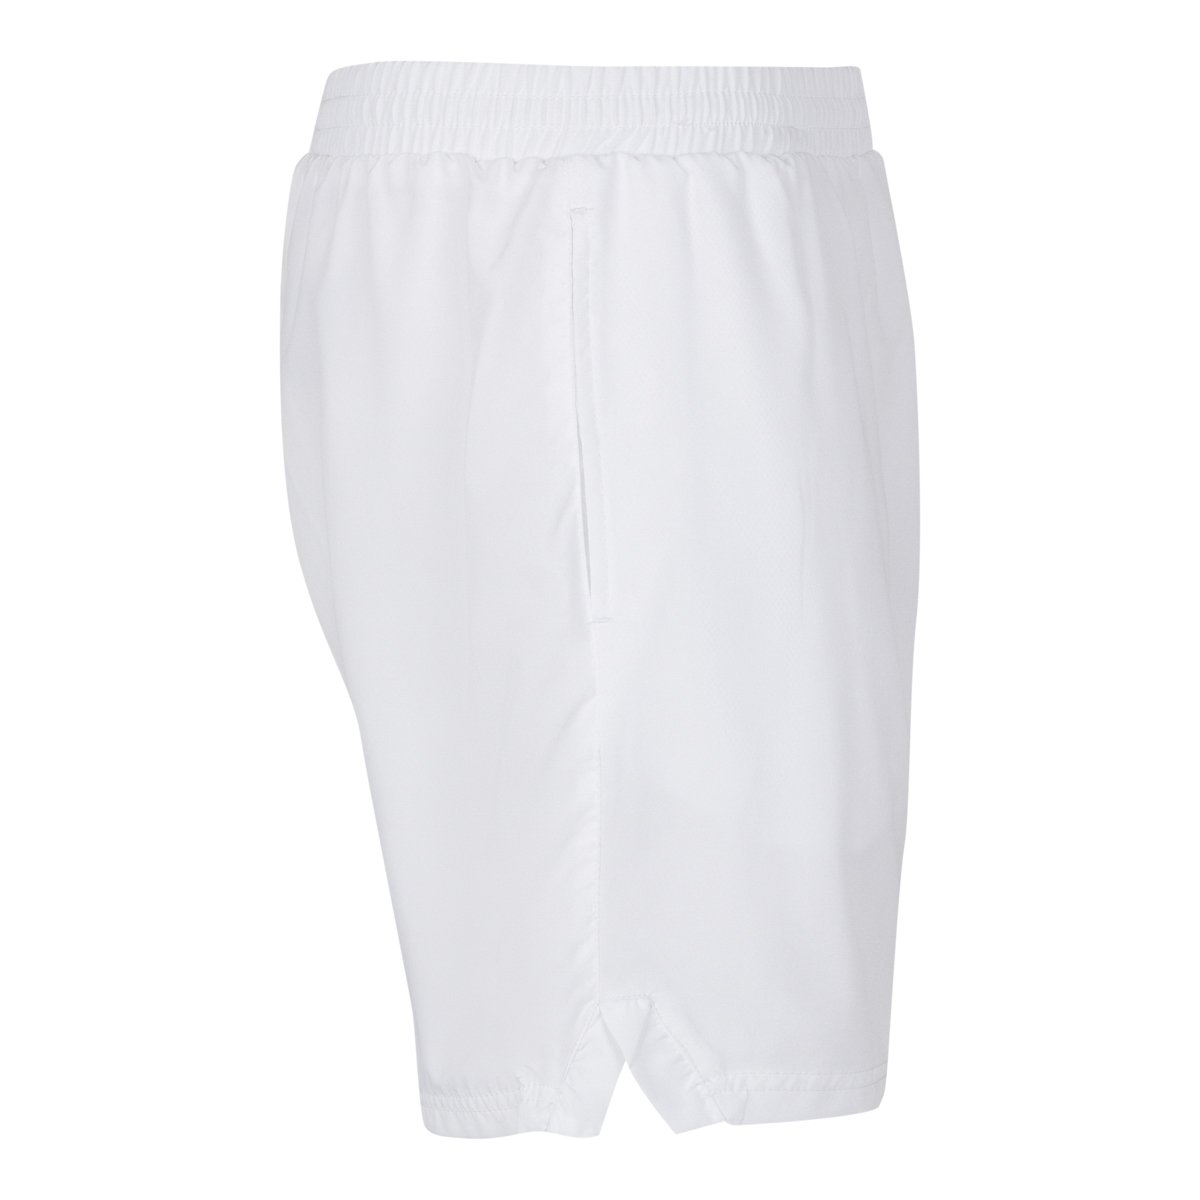 Pantalones cortes Tenis Lambre Blanco Niños - Imagen 3